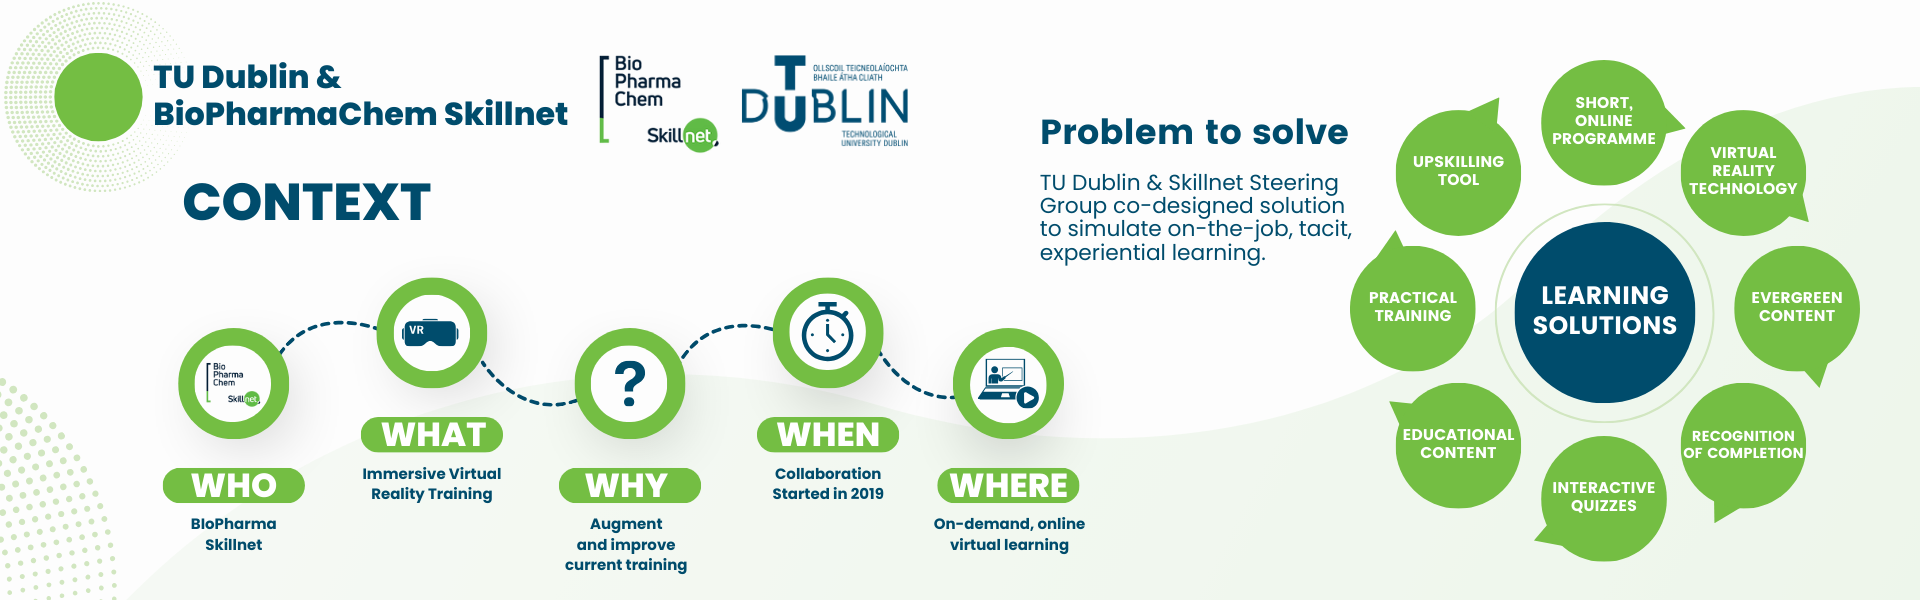 TU Dublin Enterprise Academy BioPharmaChem Skillnet Partnership